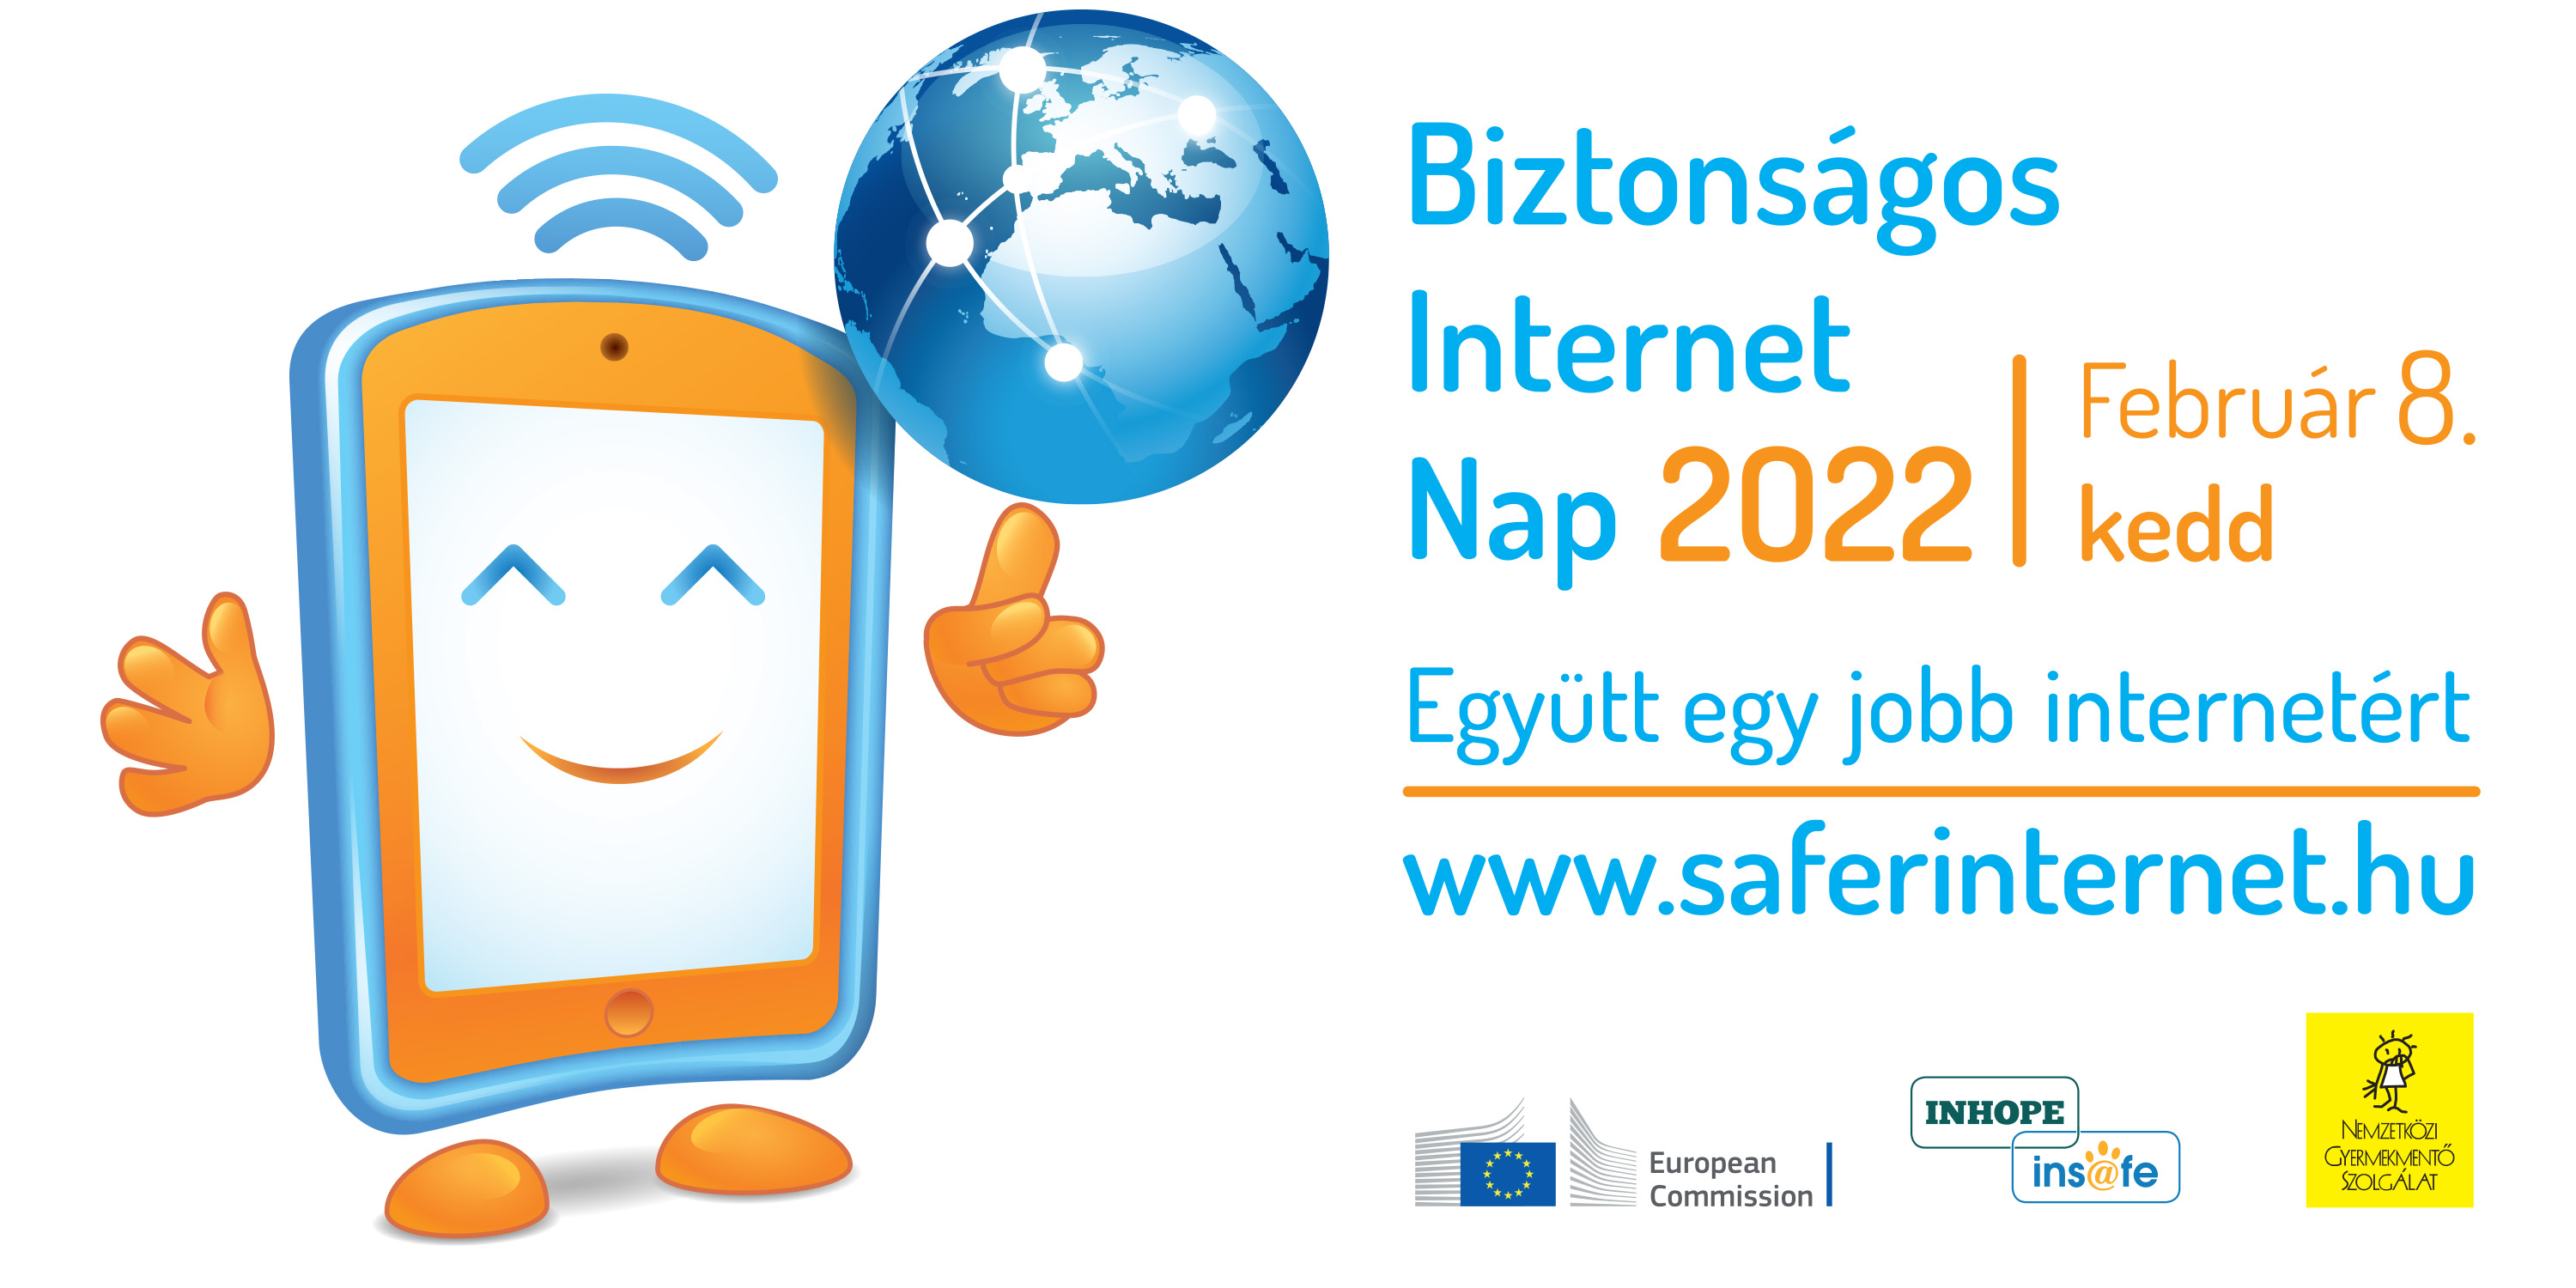 EGYÜTT EGY JOBB INTERNETÉRT! - SAFER INTERNET DAY (SID) / BIZTONSÁGOS INTERNET NAP 2022. FEBRUÁR 8.